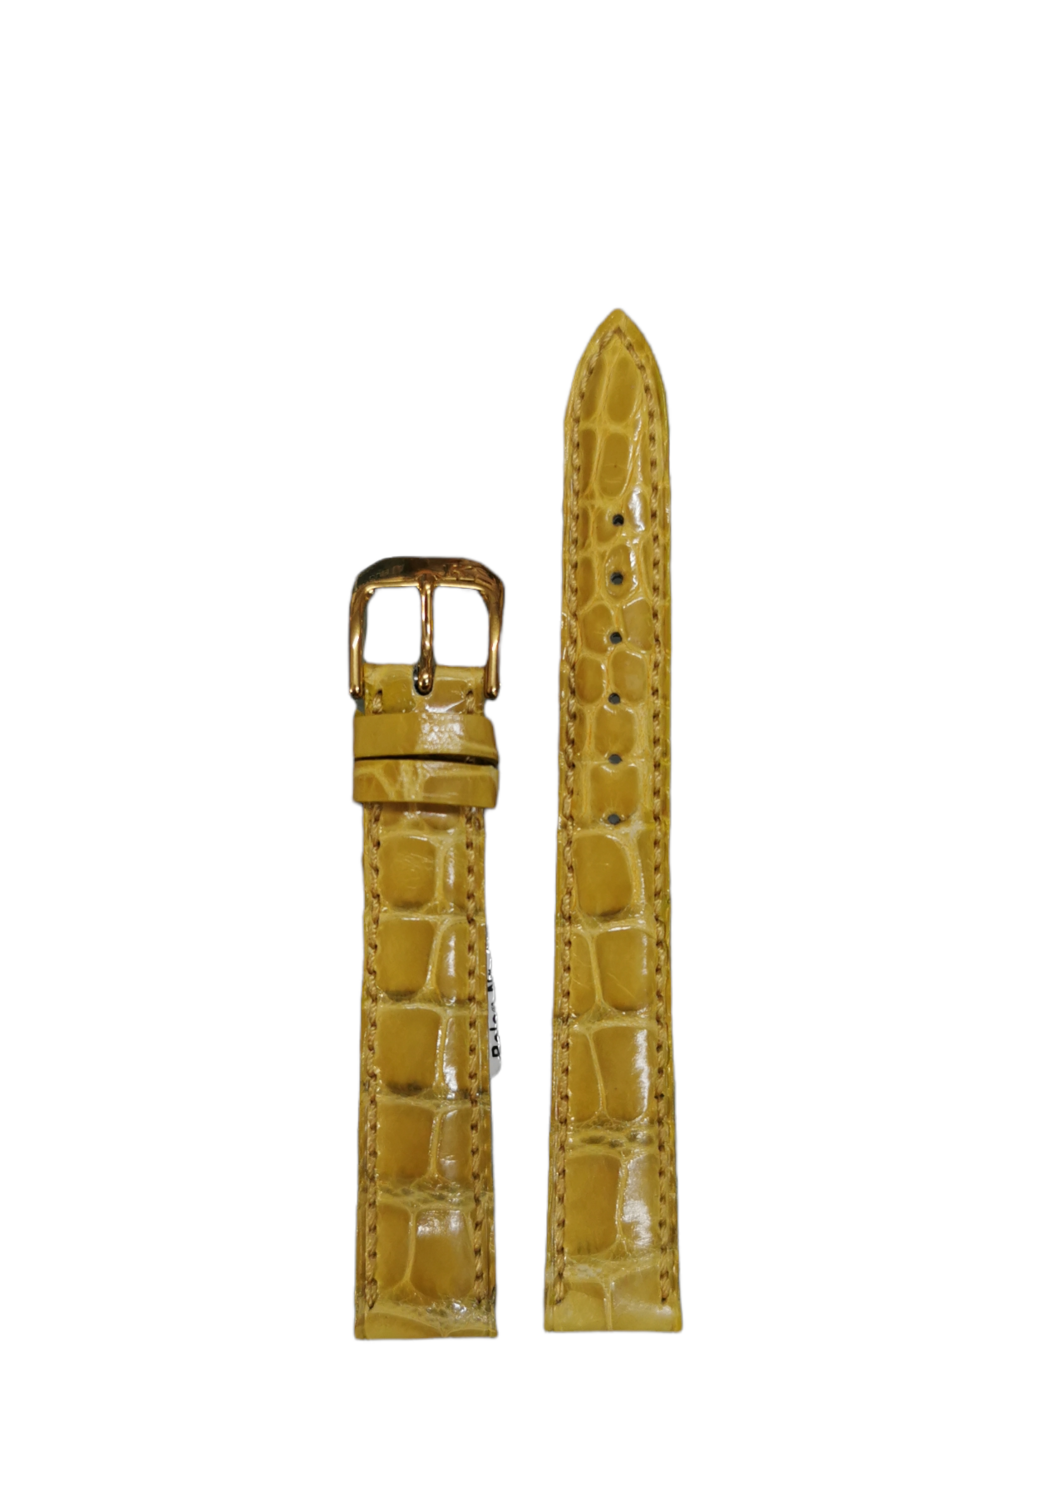 Original Gübelin Uhrenband, Alligator, Full cut steel, Senfgelb, 14 mm Breite